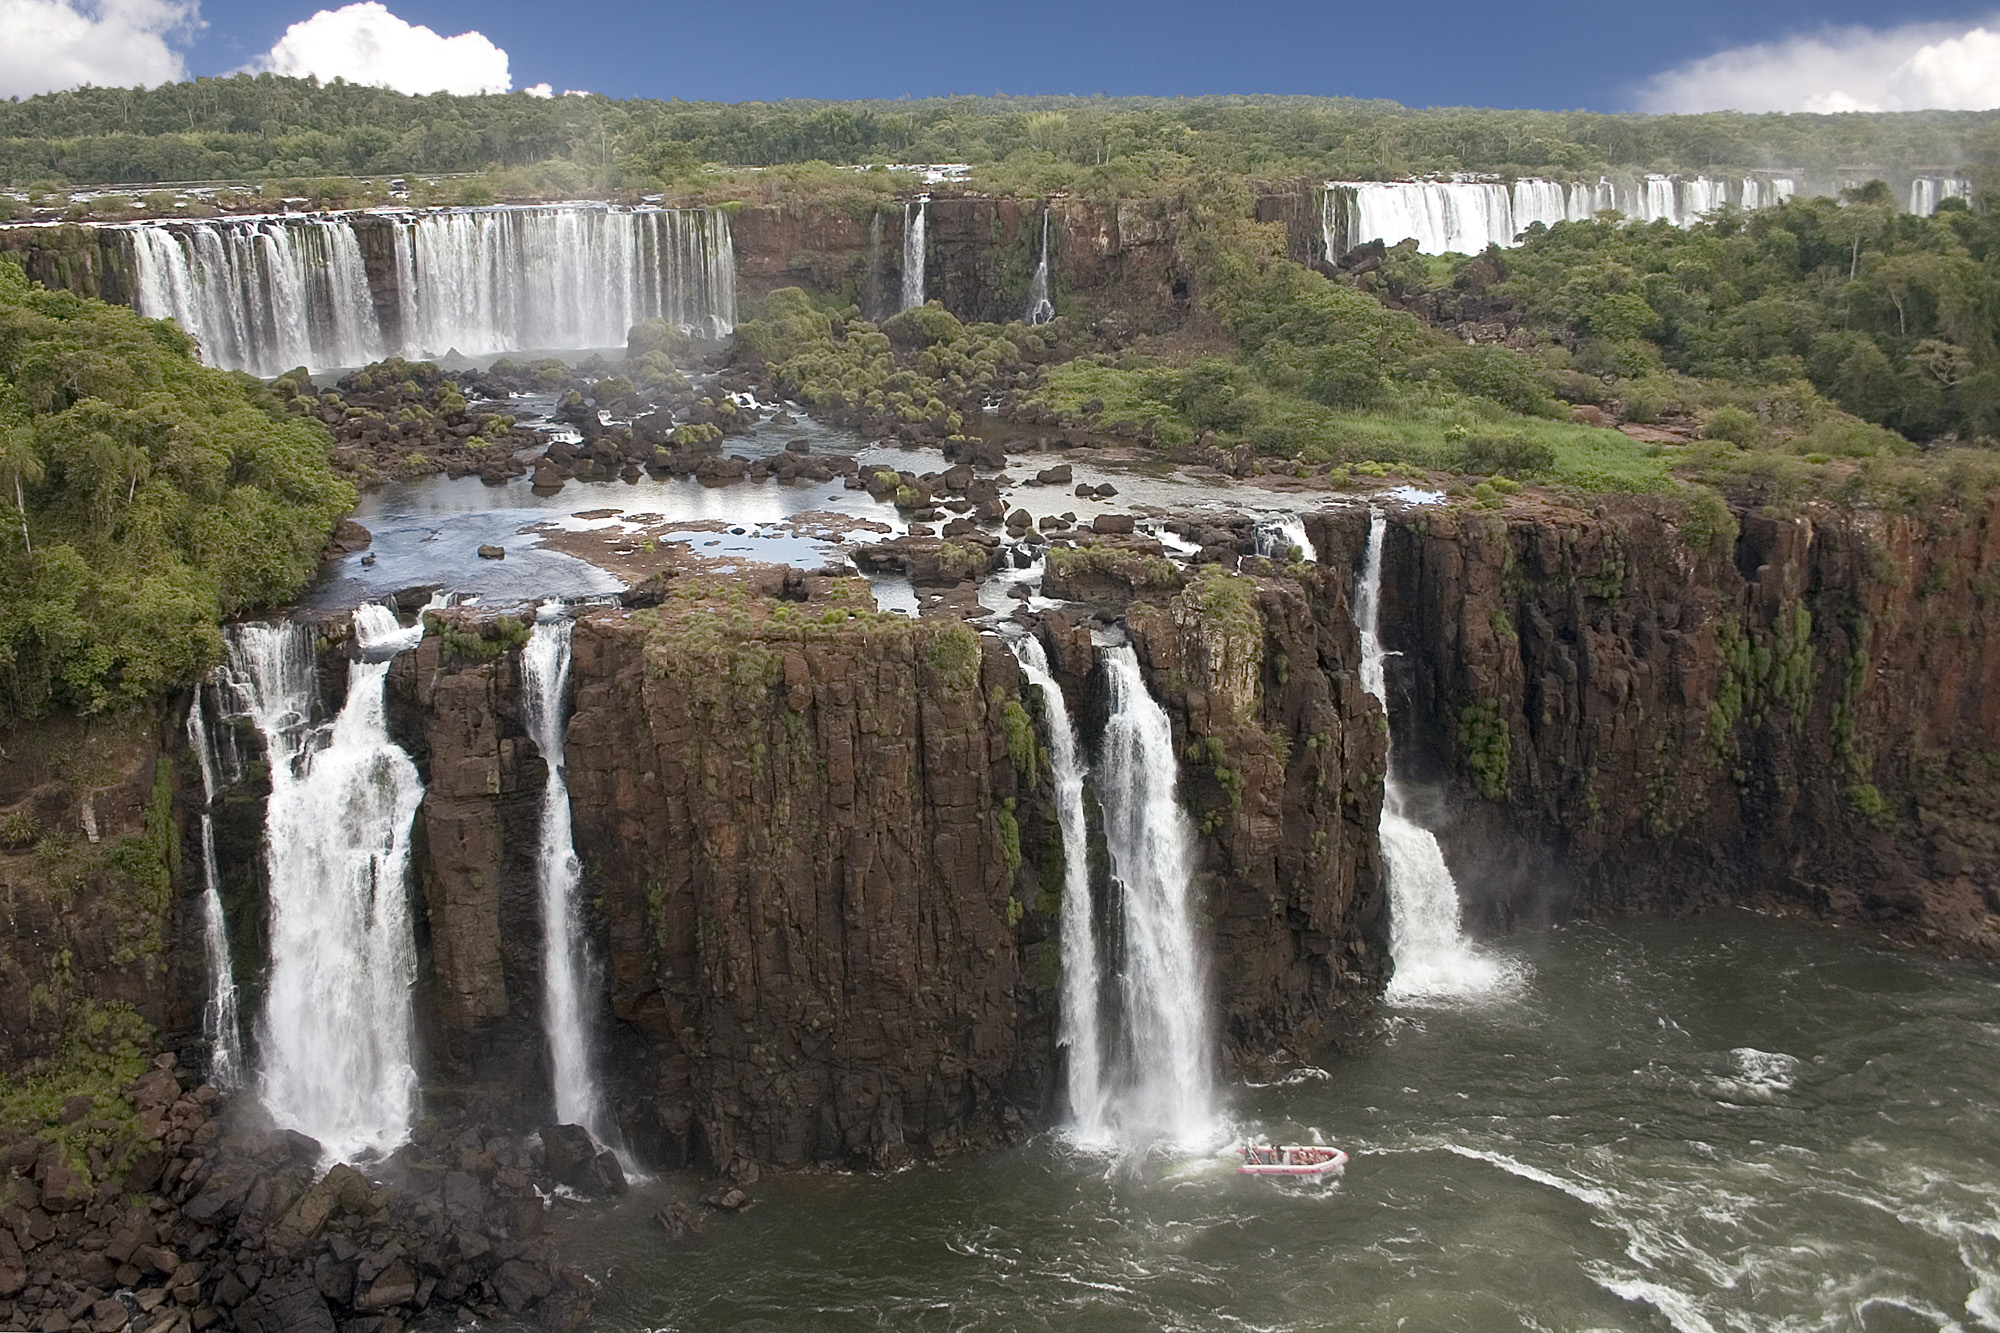 Широкий водопад в южной америке. Водопады: Анхель и Игуасу.. Катаратас дель Игуасу. Водопады Игуасу (Cataratas do Iguaçu).